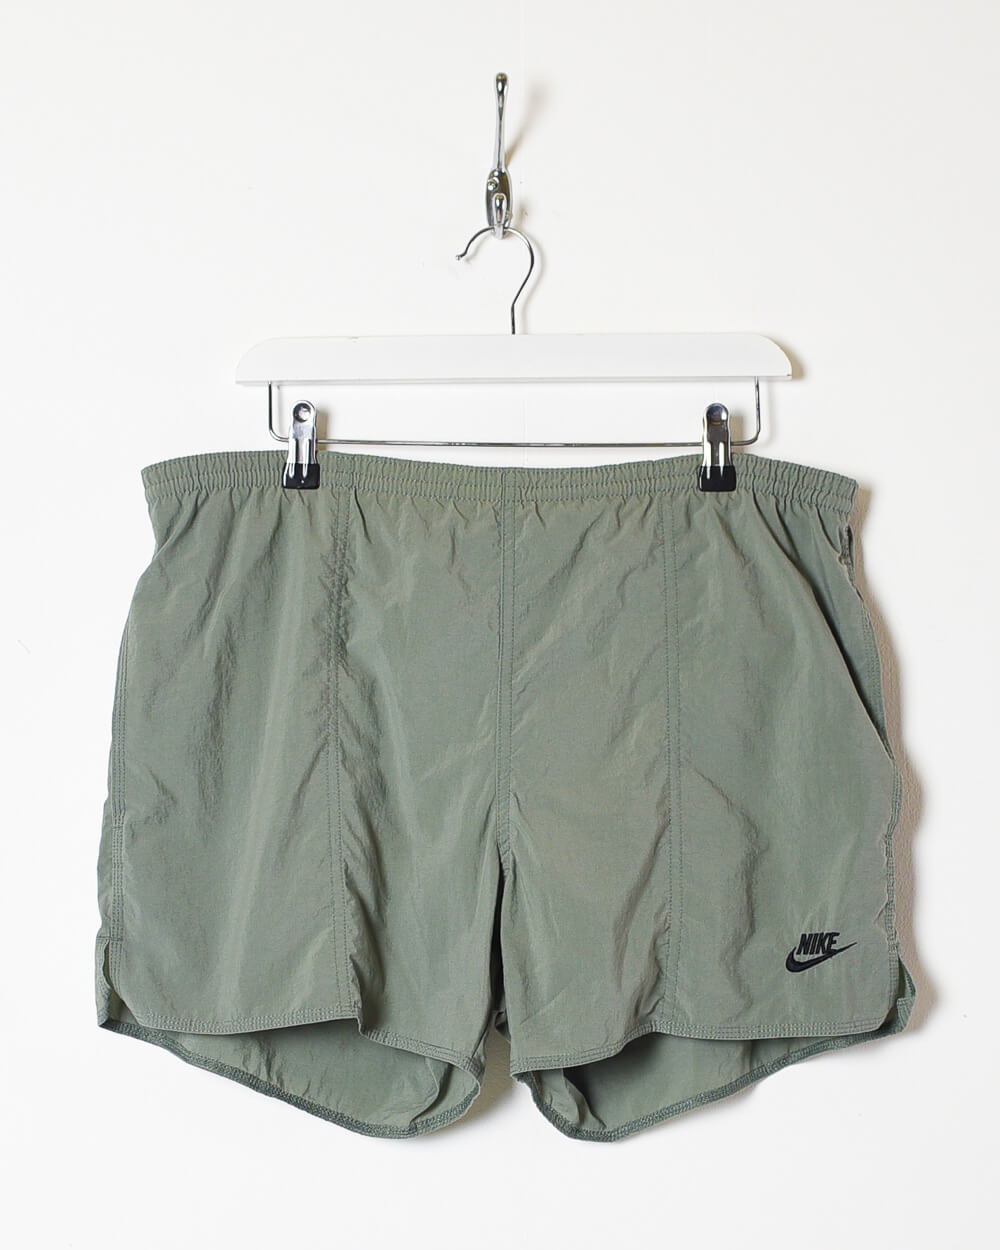 Khaki Nike Shorts - Large